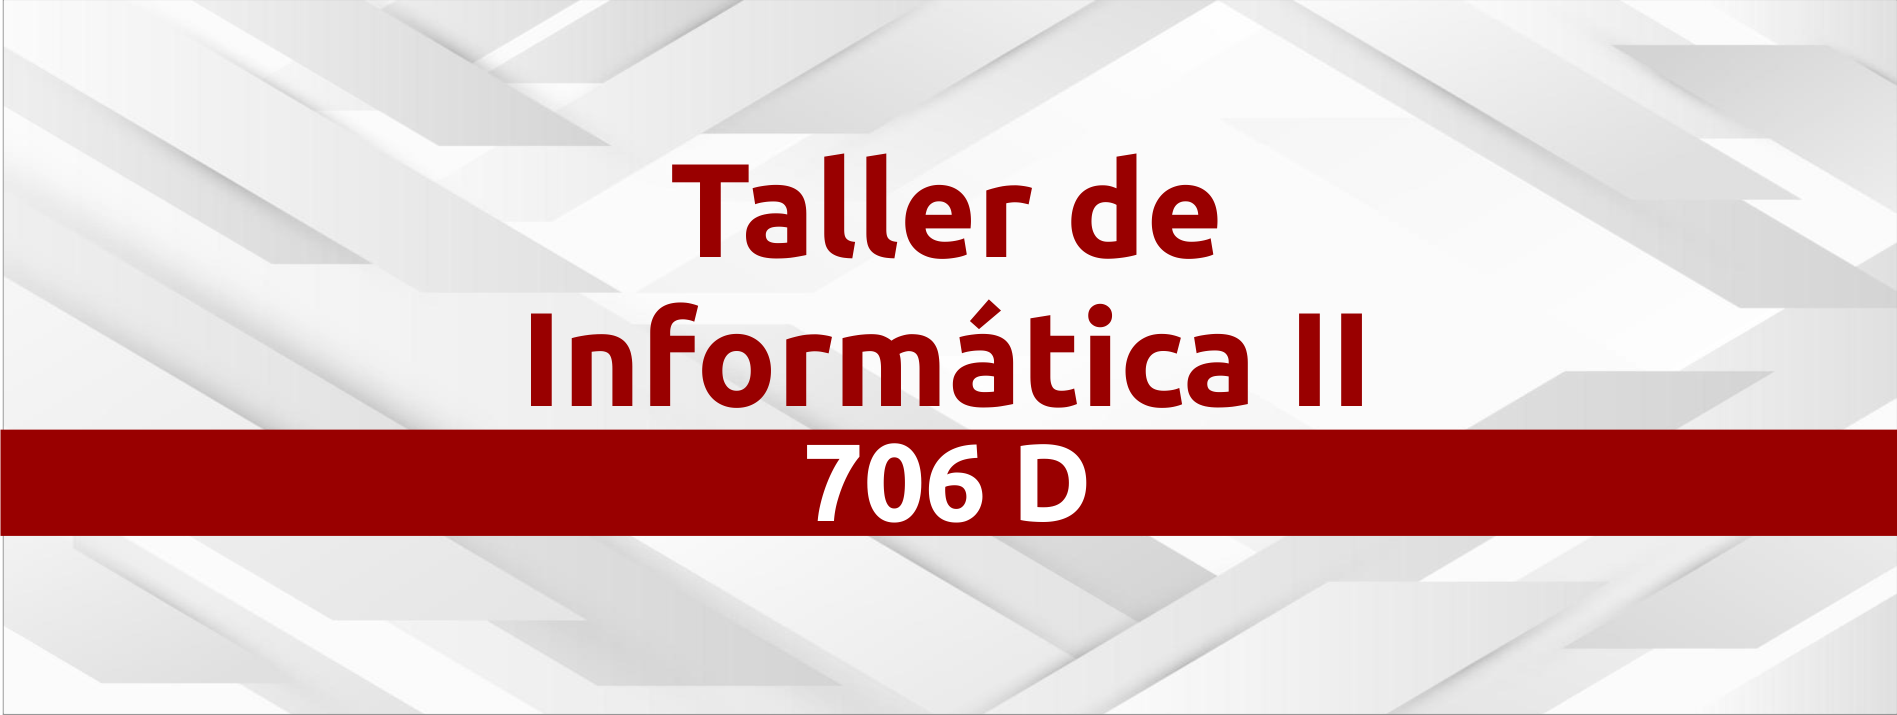 223ANCL67O Taller de Informática II